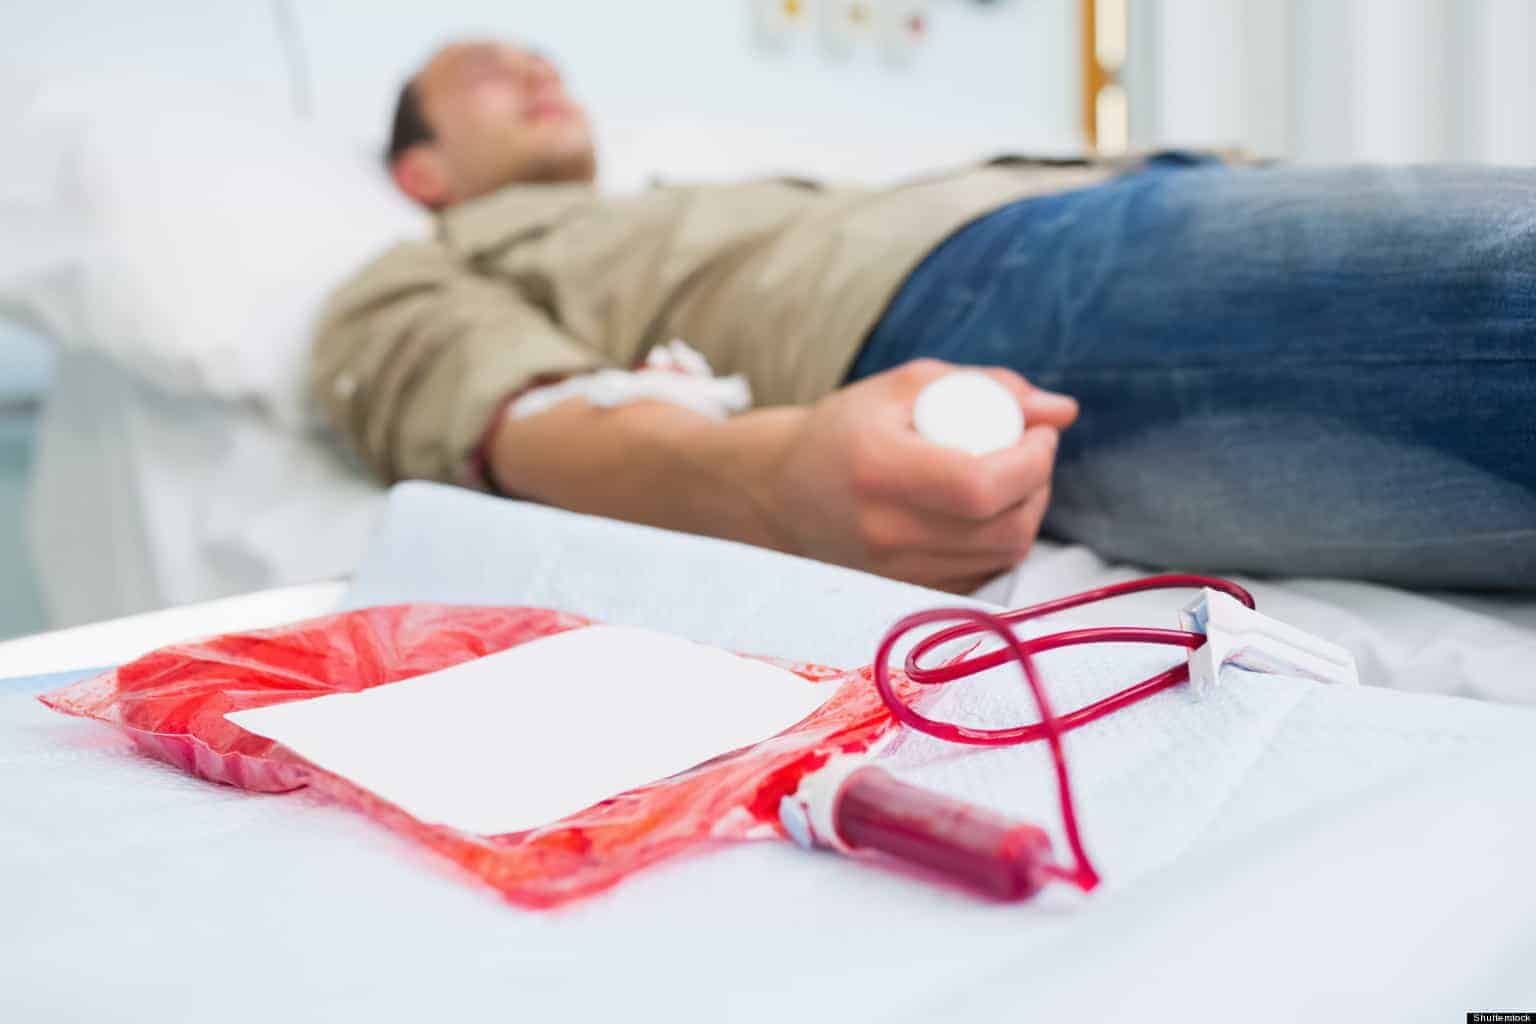 Penularan virus hepatitis B melalui transfusi darah